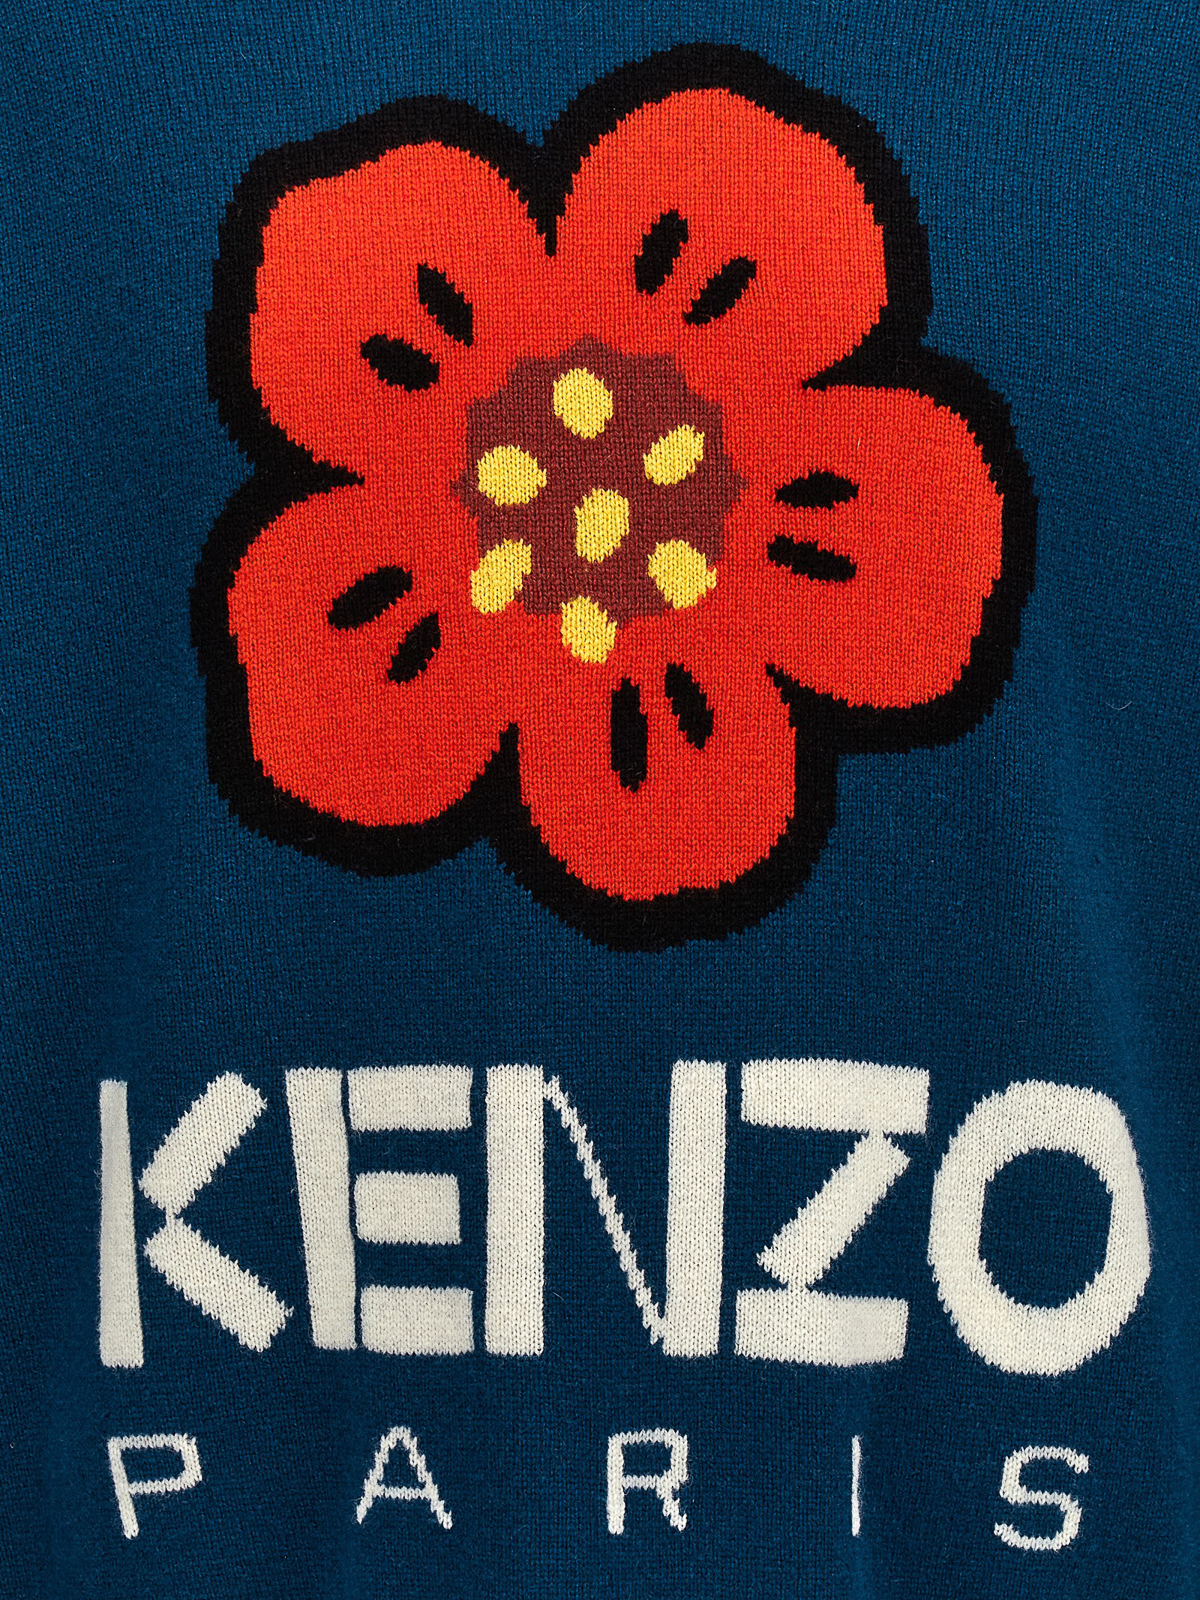 Shop Kenzo Boke Flower Sweater In Blue